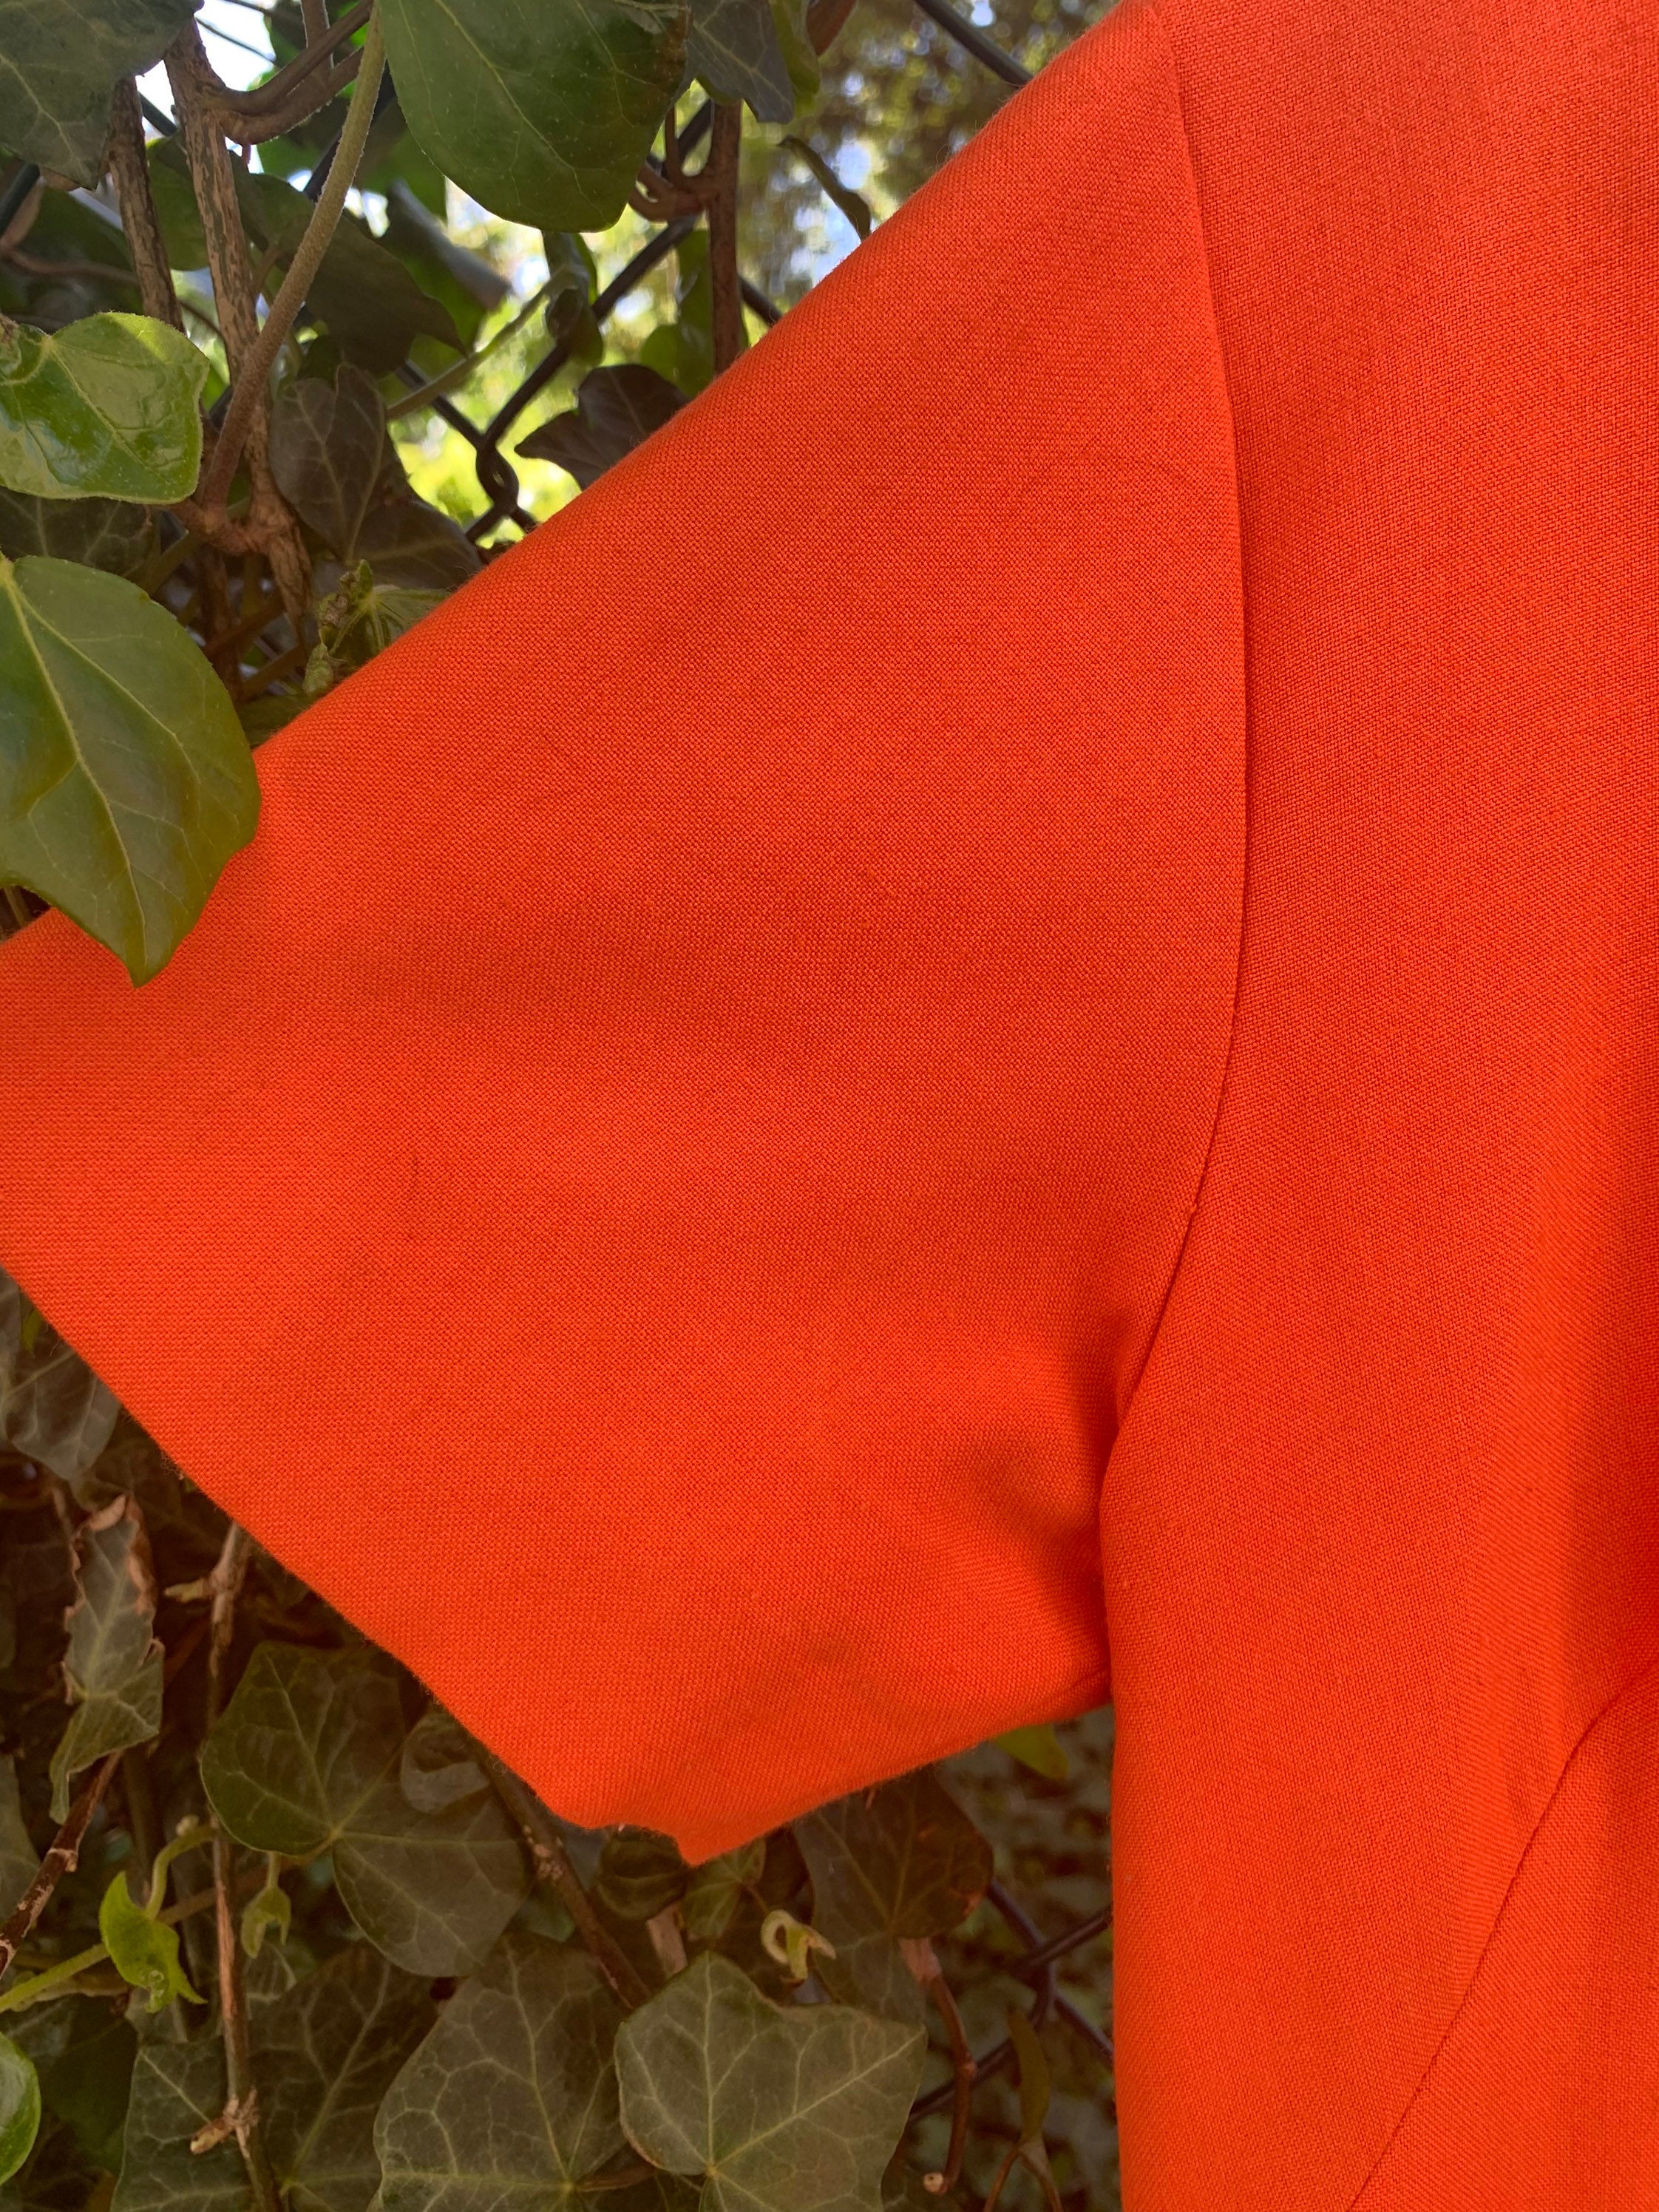 Vintage 1970s Orange Owl Dress Mod Novelty Print Embroidered | Etsy